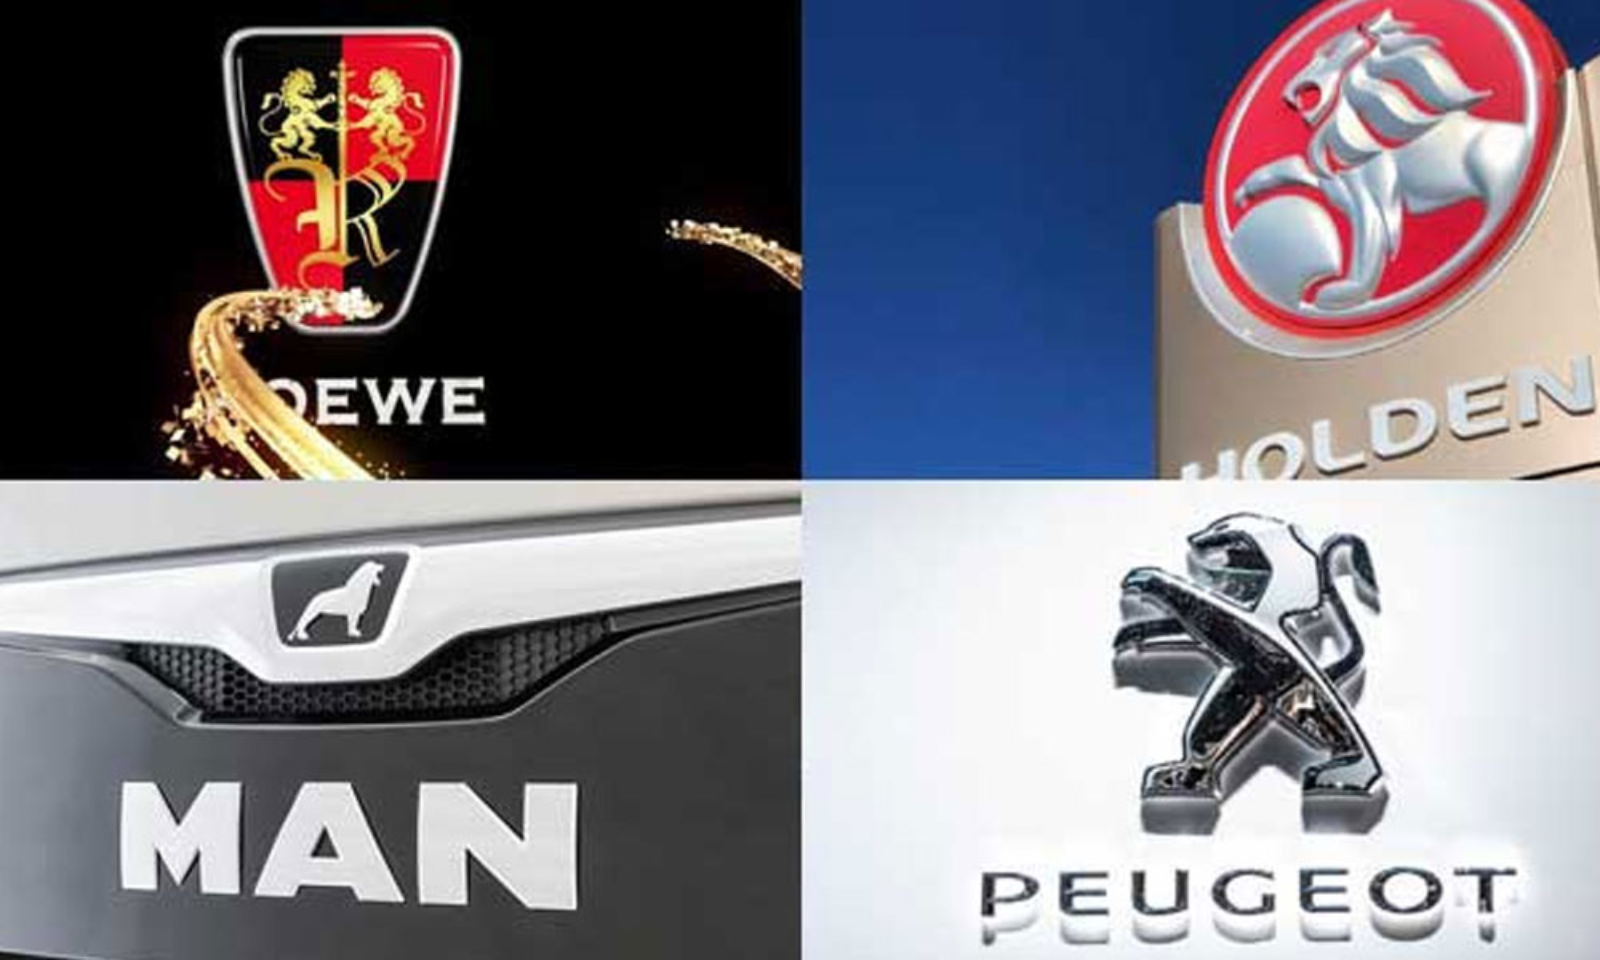 foreign car logos list